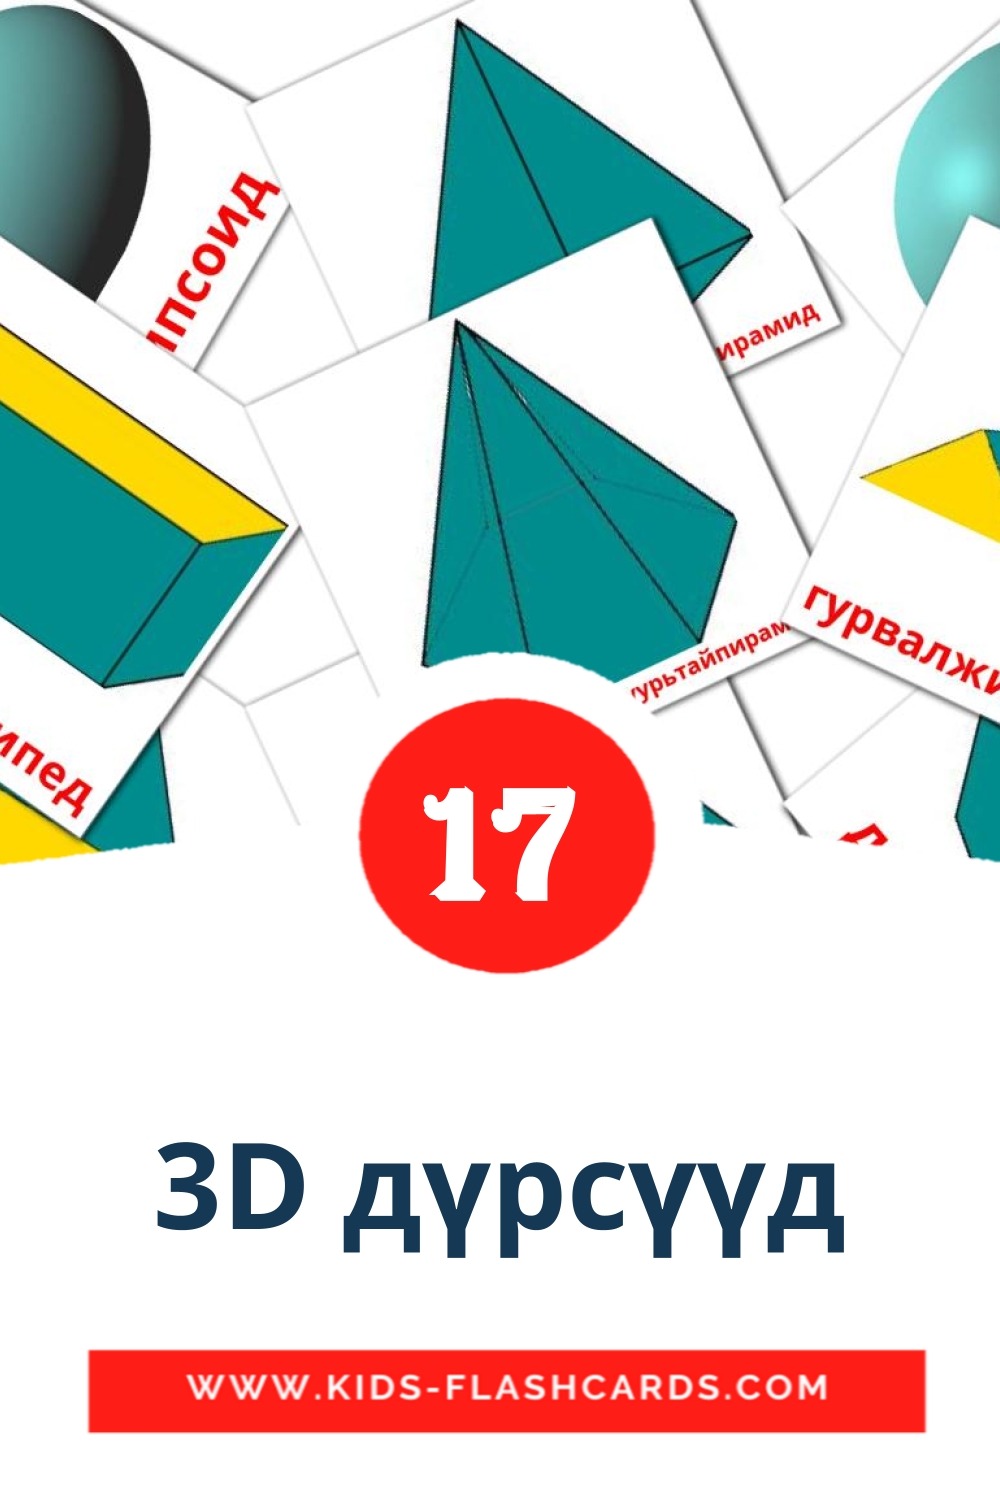 17 Cartões com Imagens de 3D дүрсүүд para Jardim de Infância em mongol